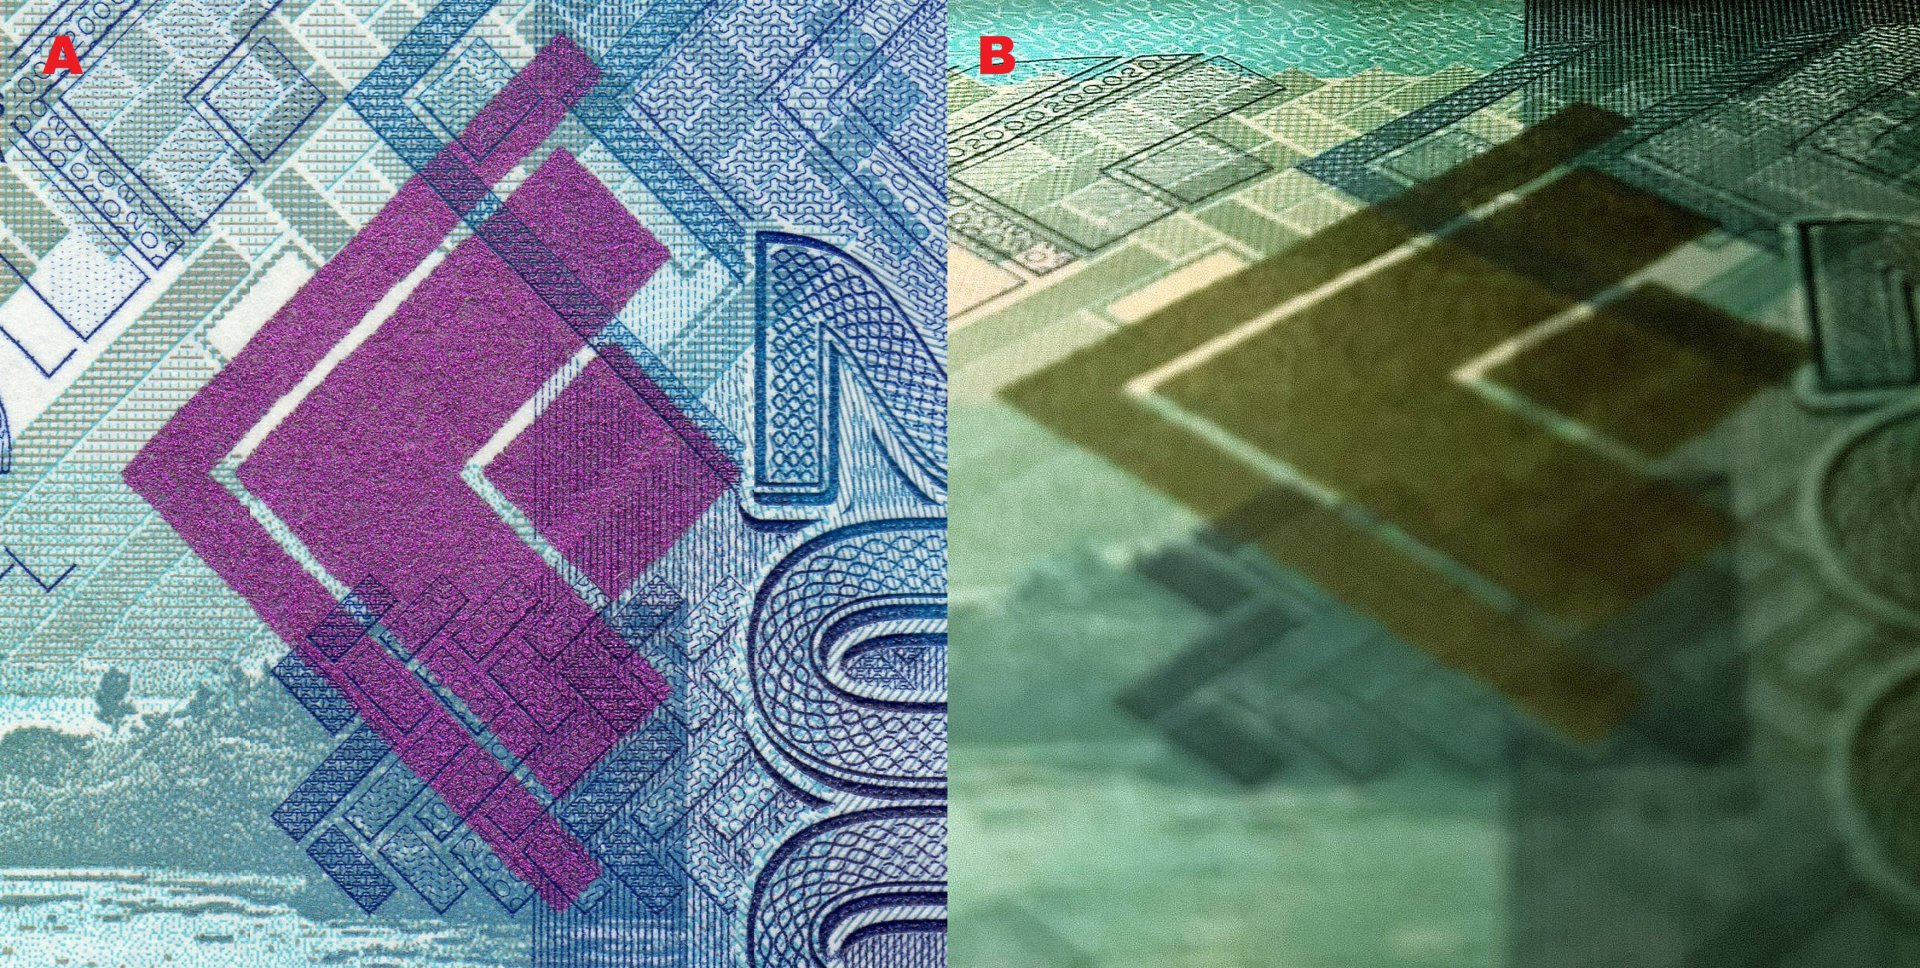 Obrázek 3 A) Pole vytvořené technologií OVI při kolmém pozorování B) Při pozorování pod úhlem 45° je zachycena změna barvy pole z fialové na tmavě zelenou.